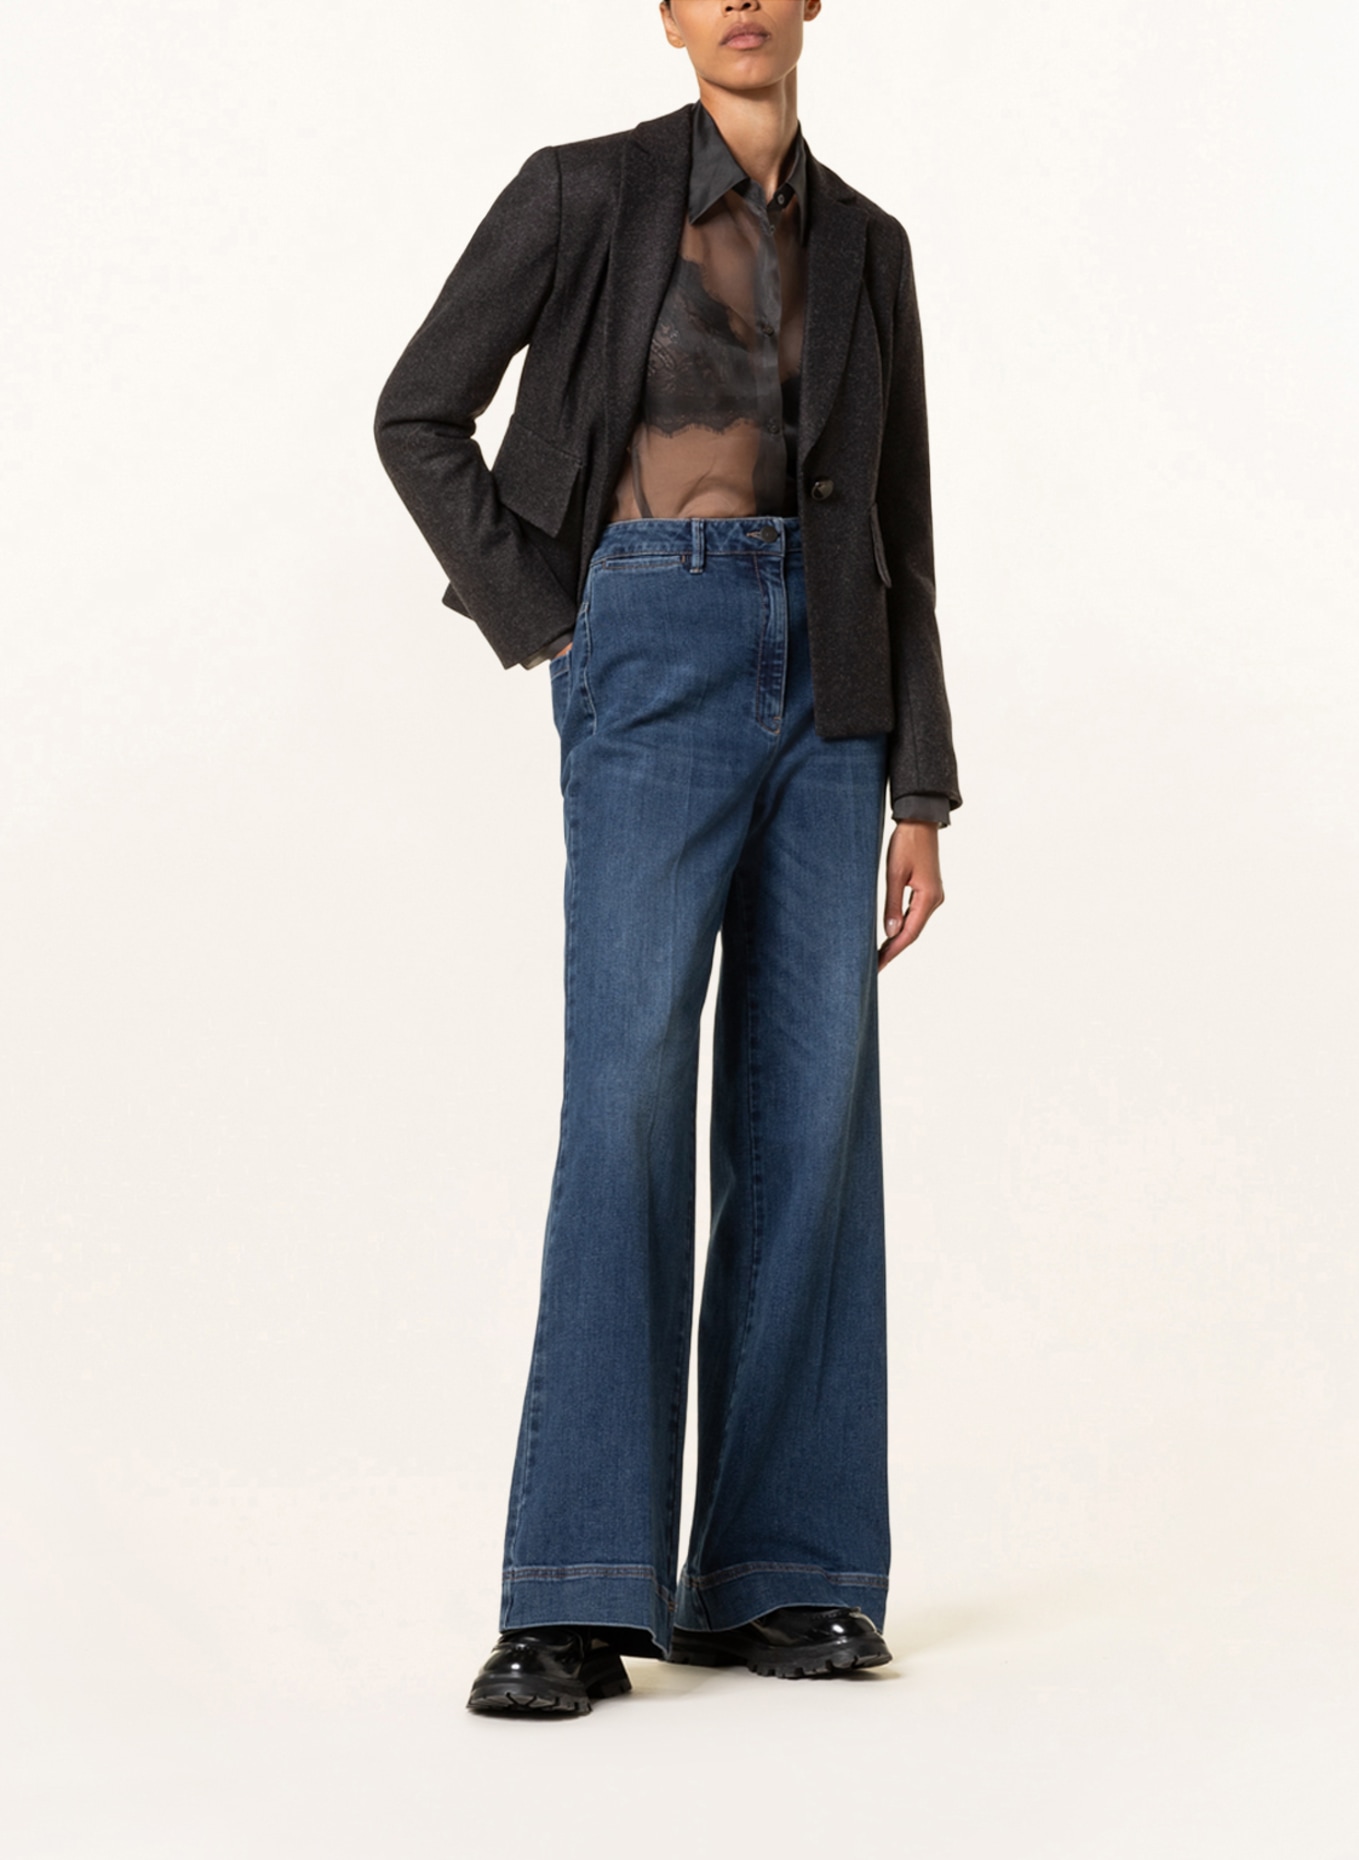 LUISA CERANO Flannel blazer, Color: DARK GRAY (Image 2)